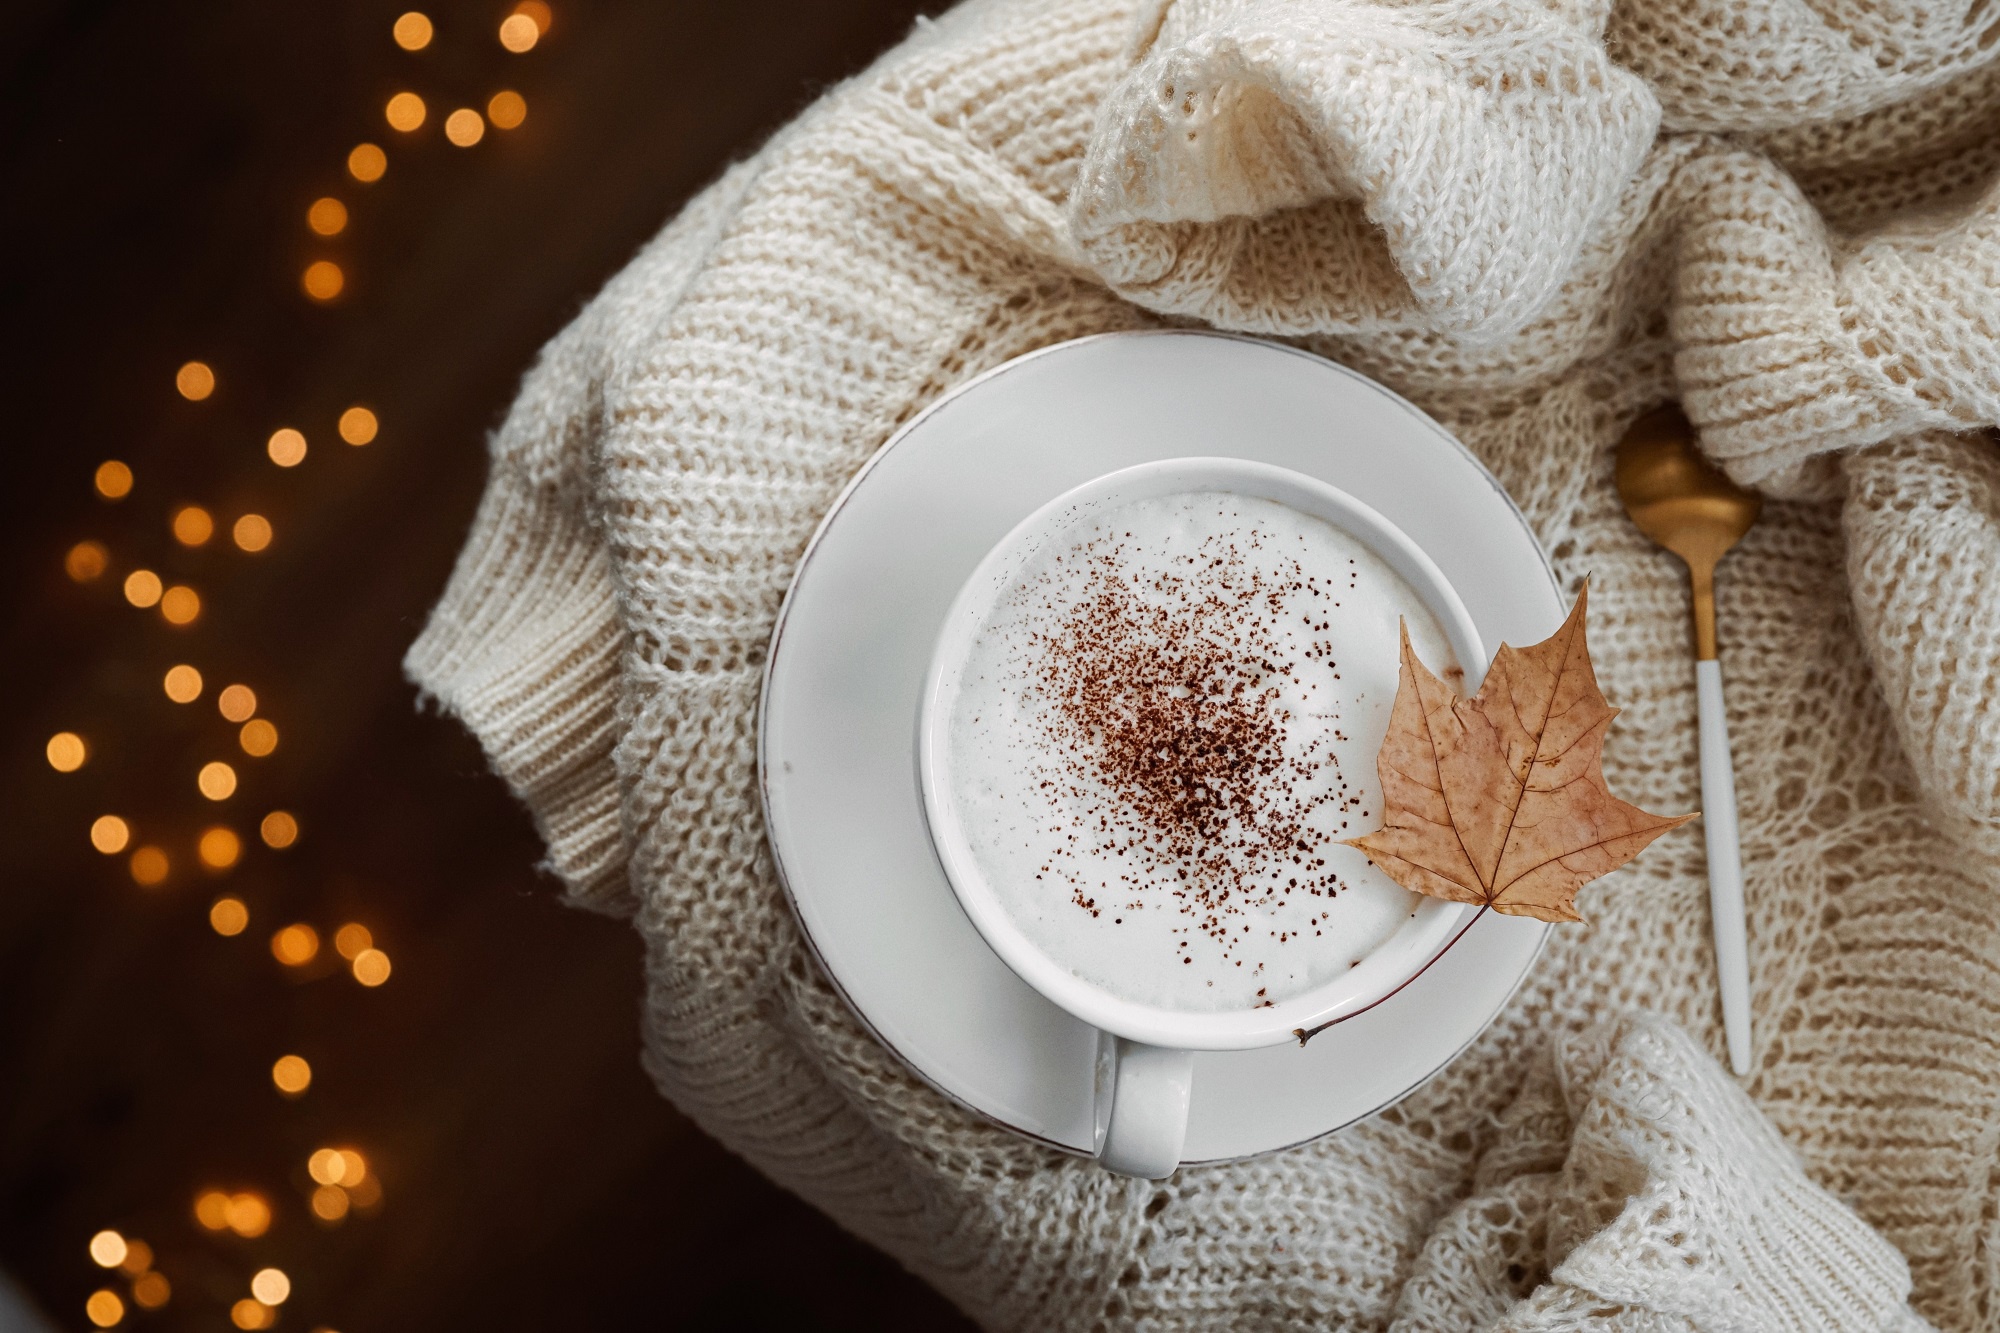 фото красивая осень и кофе две чашки